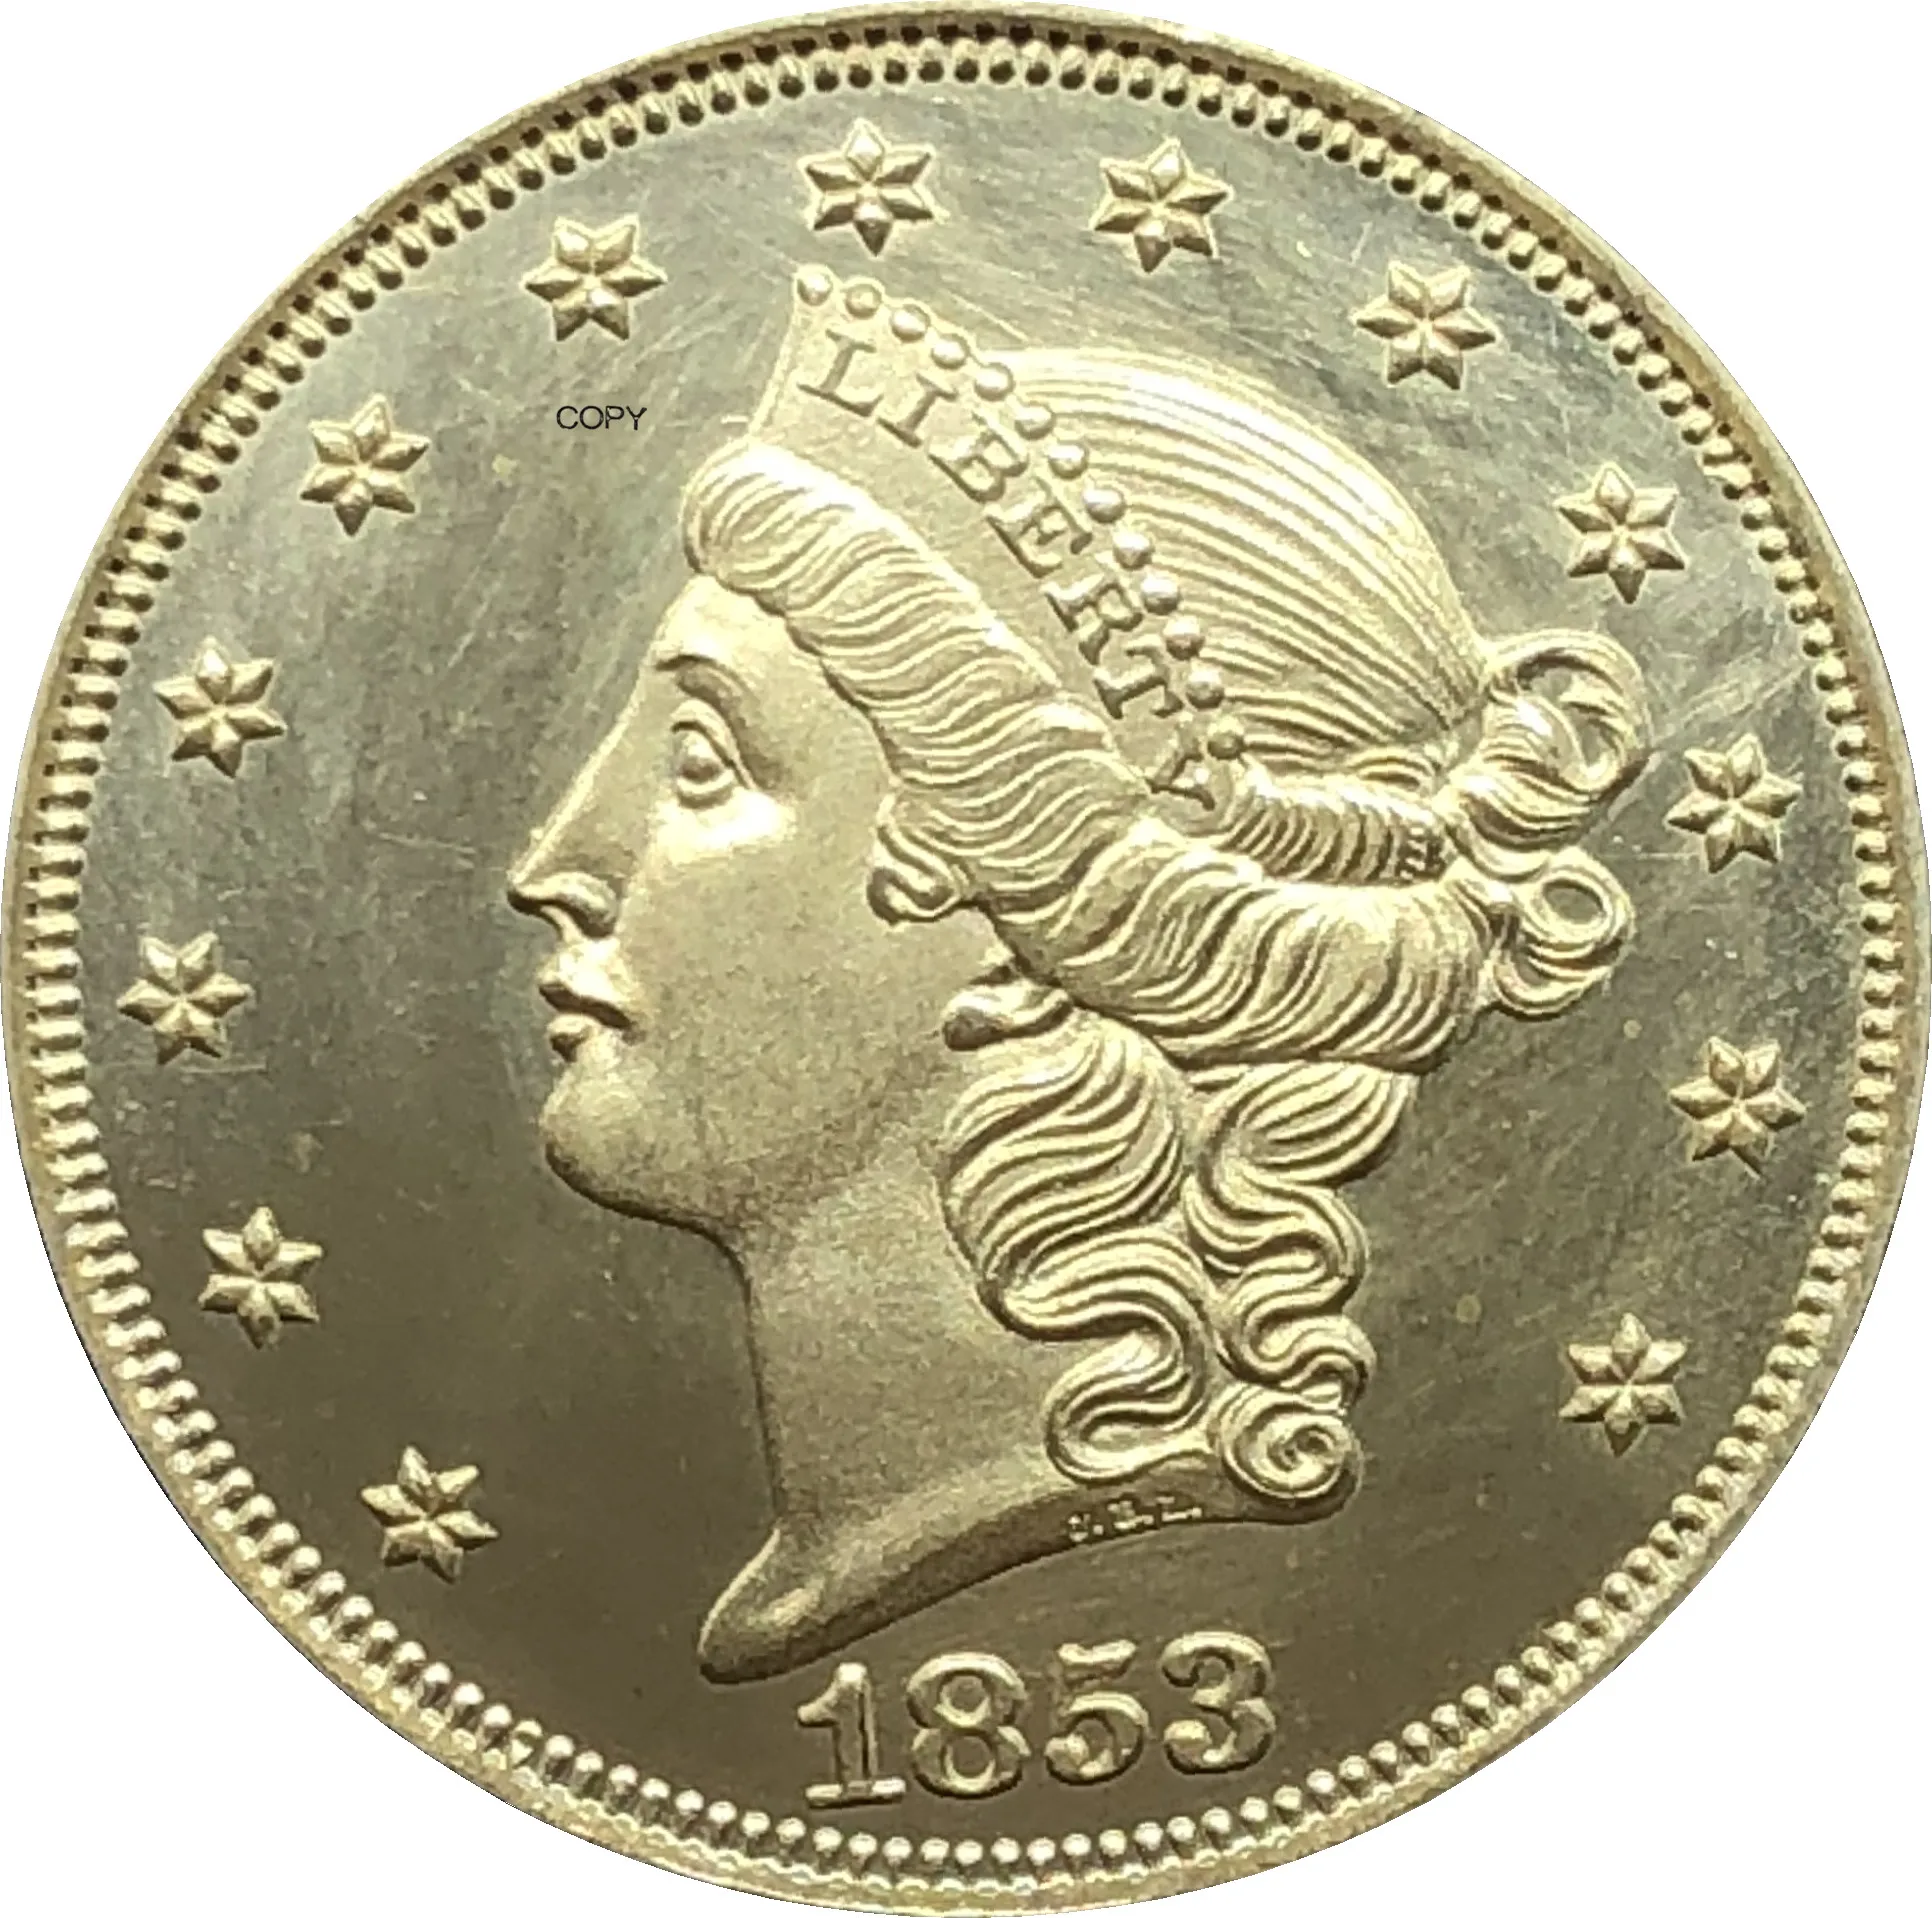 Liberty Head-doble águila de los Estados Unidos de América, 1853, 1853 O 20  dólares, sin lema, moneda de oro, monedas de copia de Metal de latón -  AliExpress Hogar y jardín